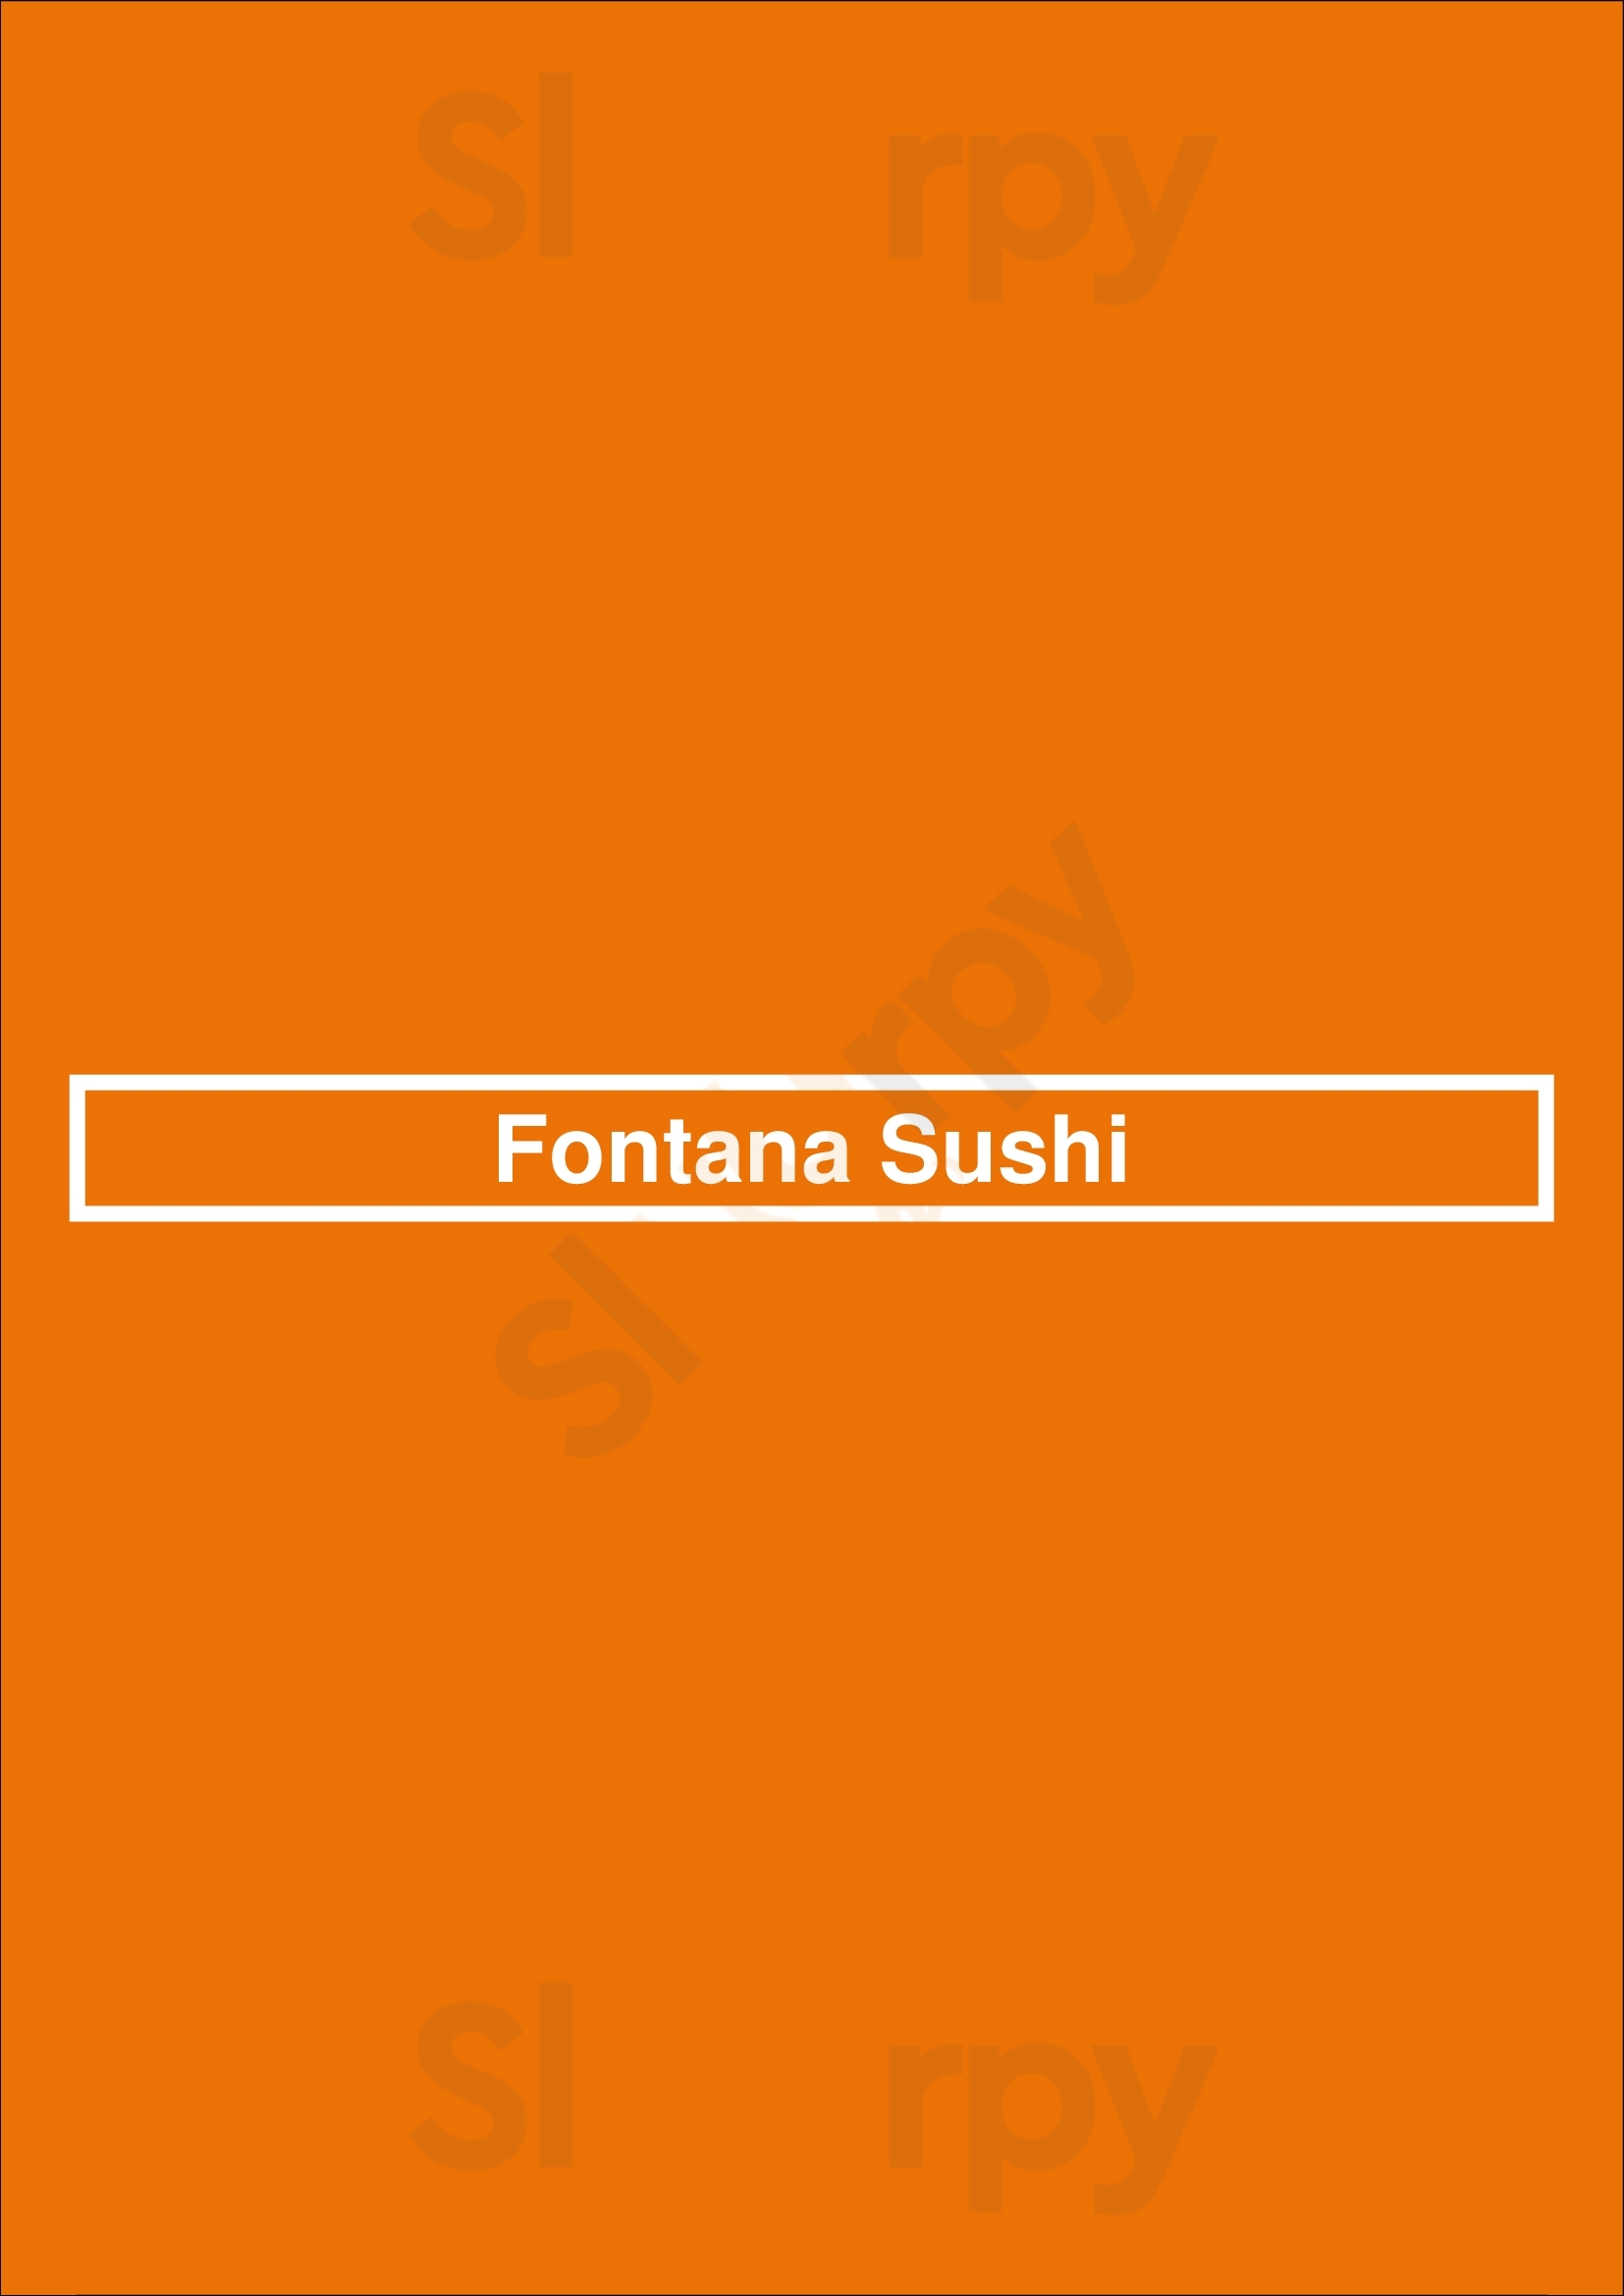 Fontana Sushi Denver Menu - 1